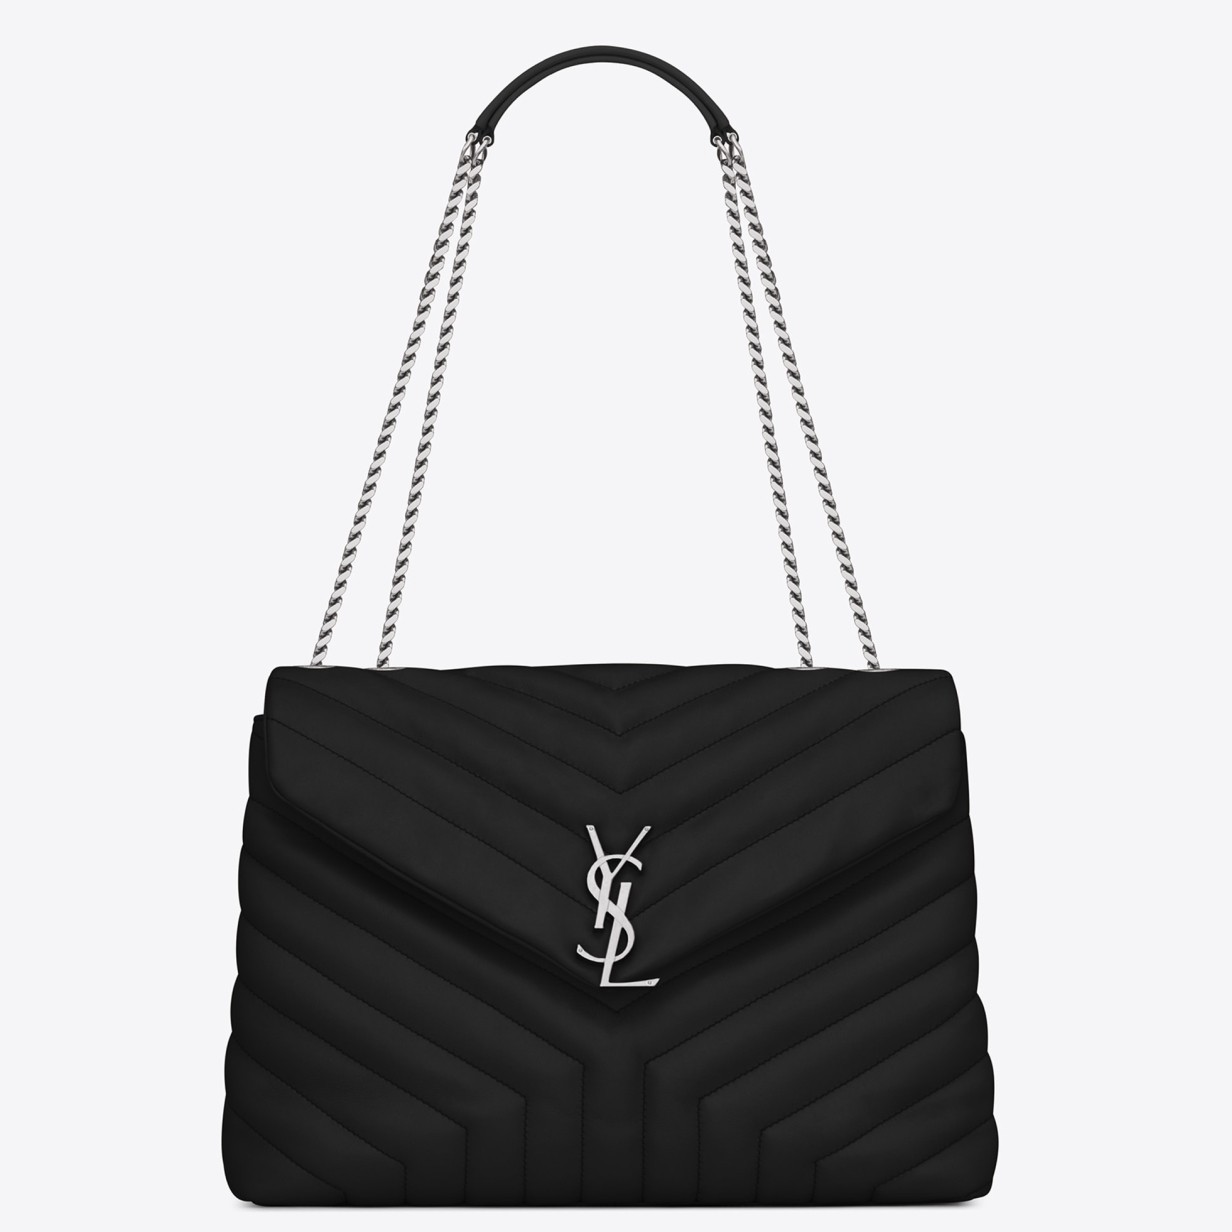 Saint Laurent Loulou Medium Bag In Noir Matelasse Leather 423